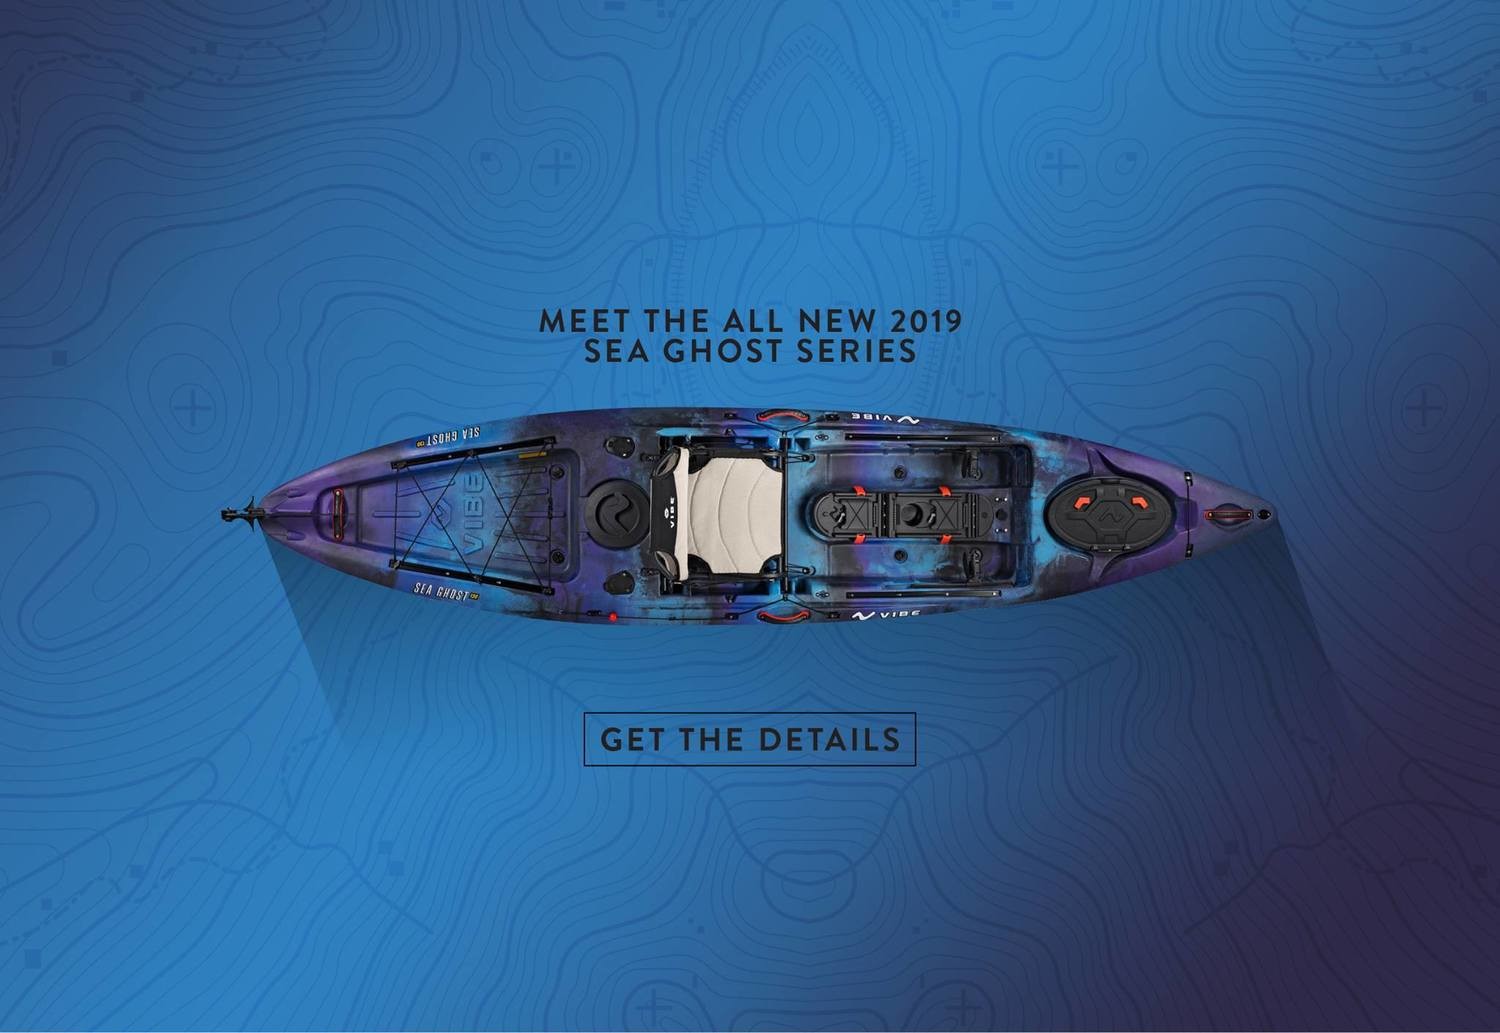 Sea Ghost 110 (2019) Models